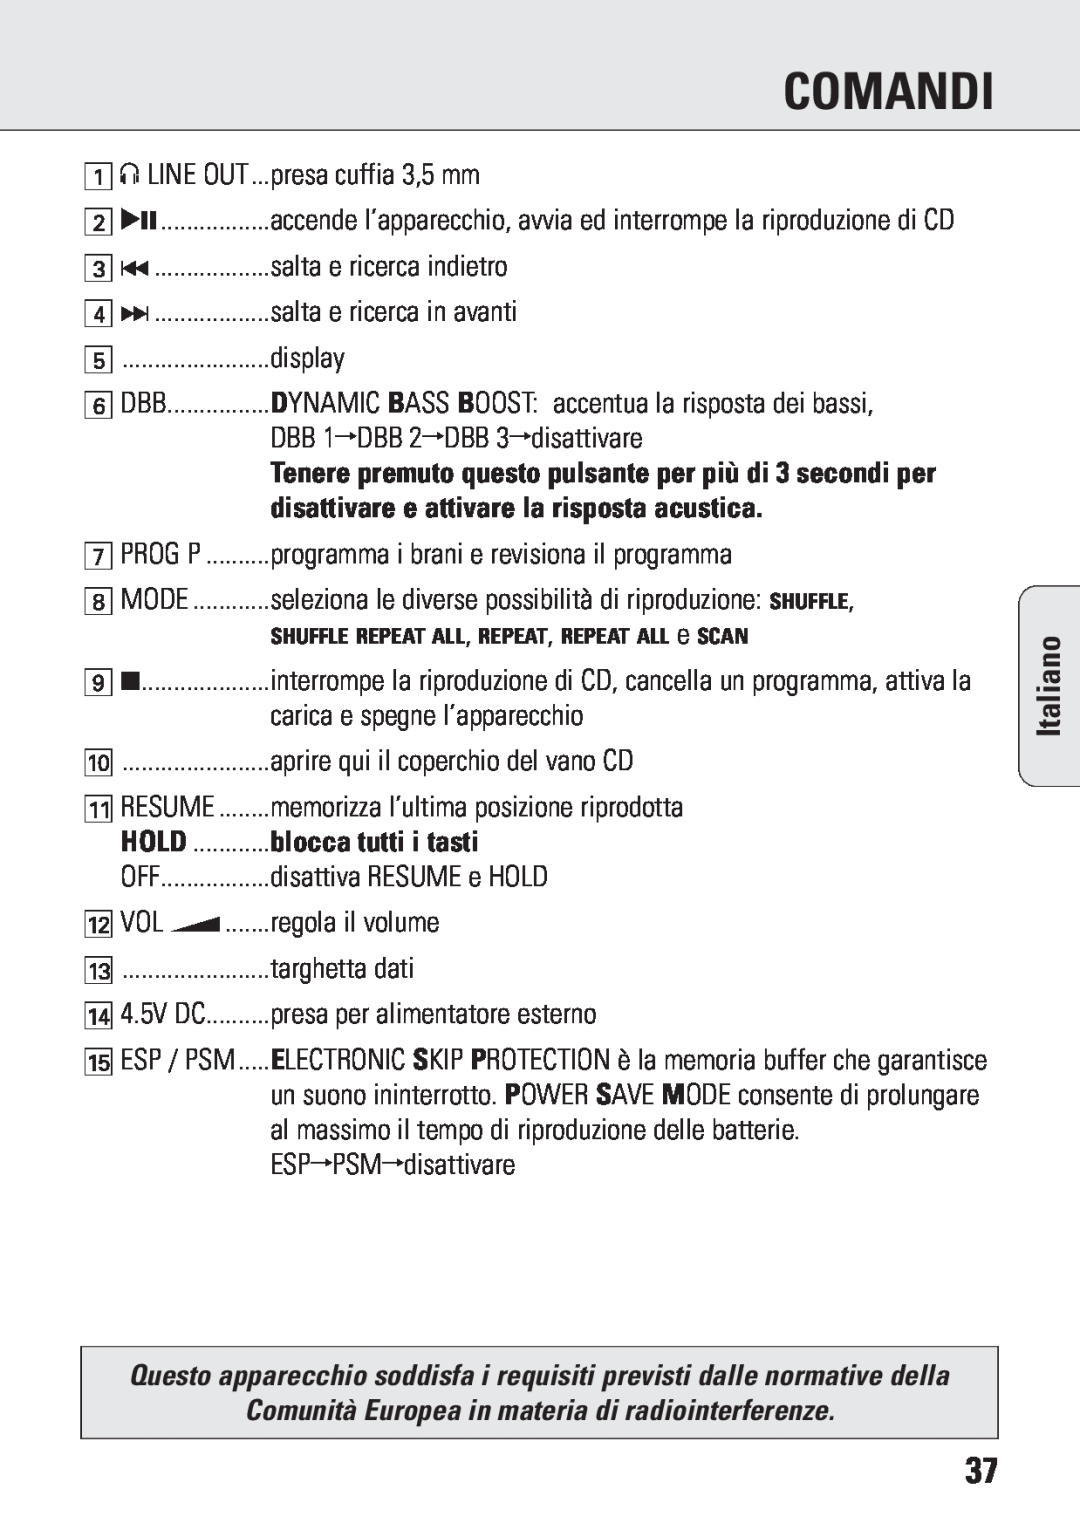 Philips ACT 7583 manual disattivare e attivare la risposta acustica, blocca tutti i tasti, Comandi, Italiano 